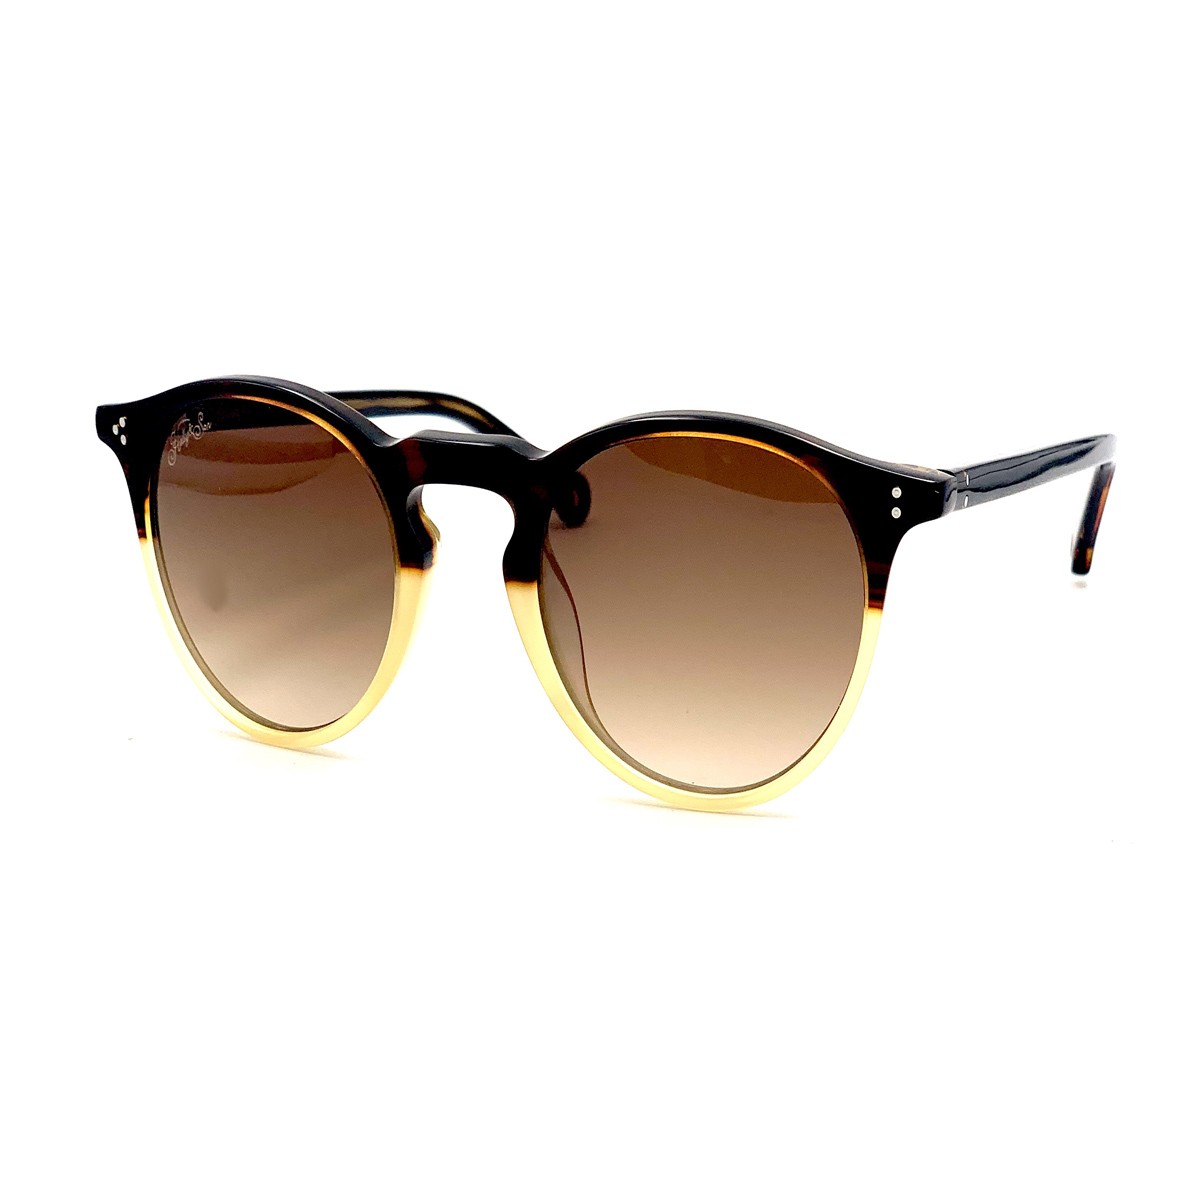 Hally & Son HS676S | Unisex sunglasses